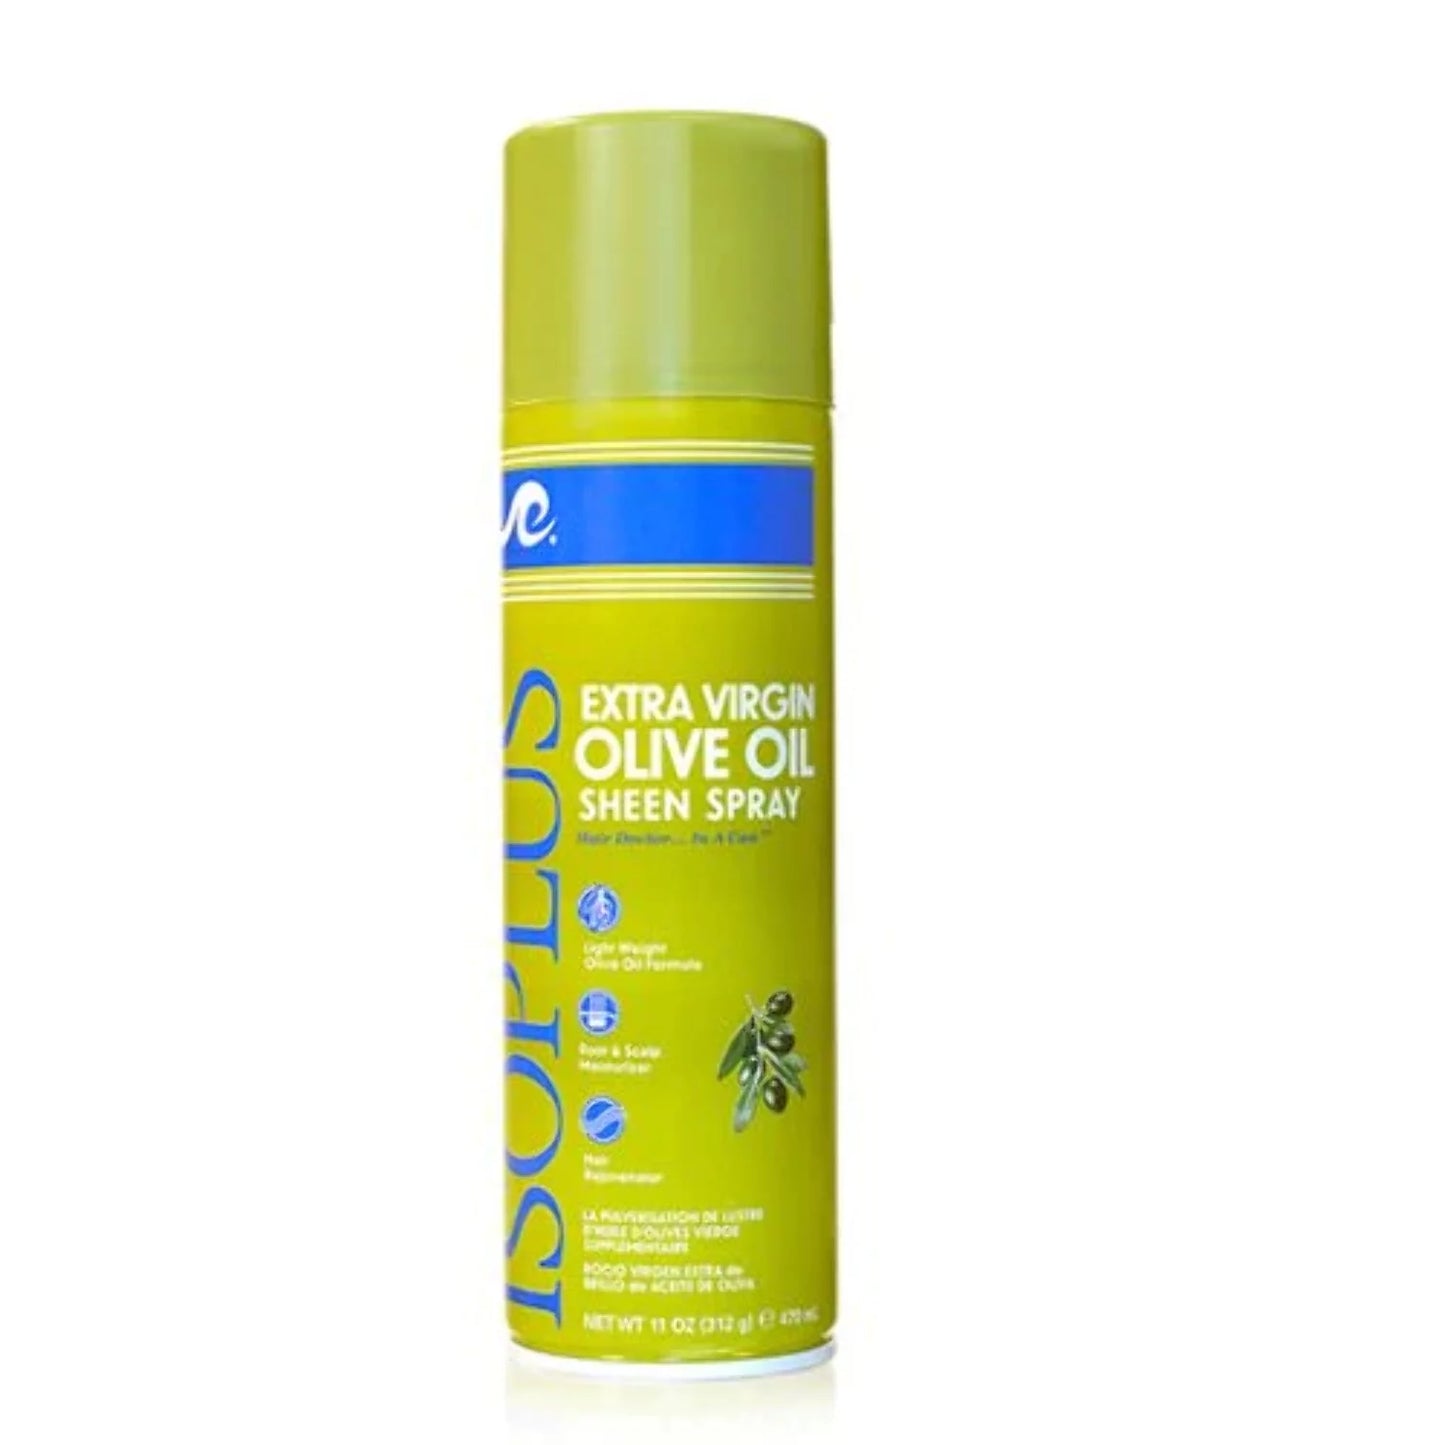 Extra Virgin Olive Oil Sheen Spray